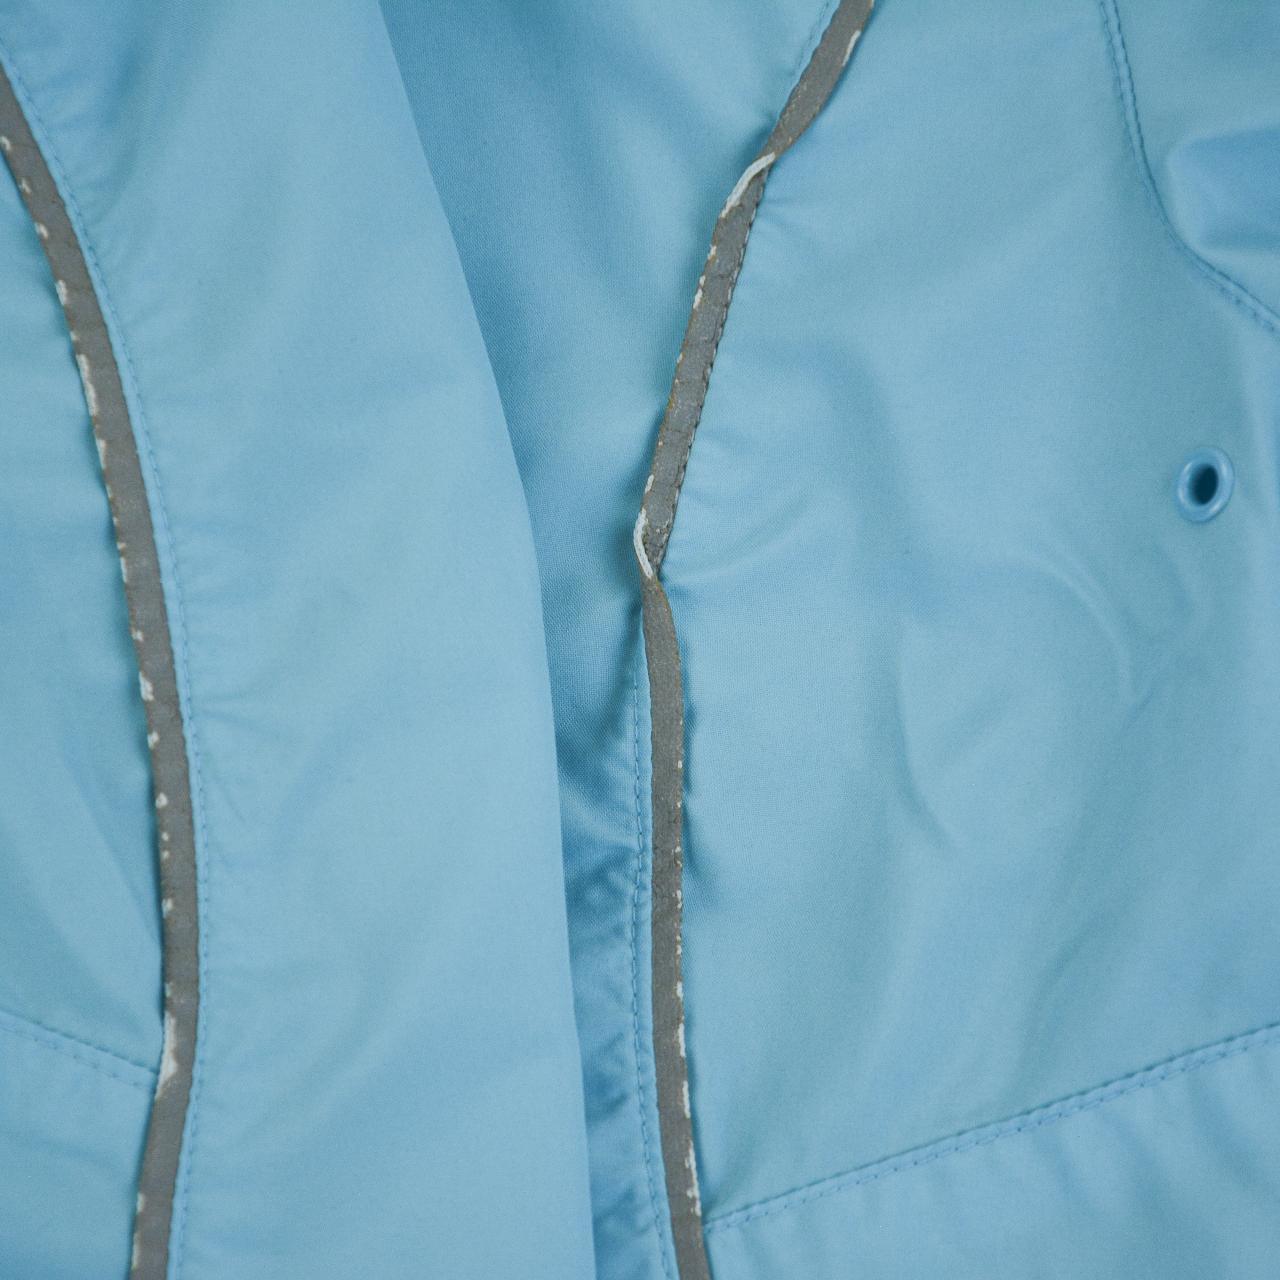 Vintage Nike Asymmetric Q Zip Jacket Size XS - Known Source